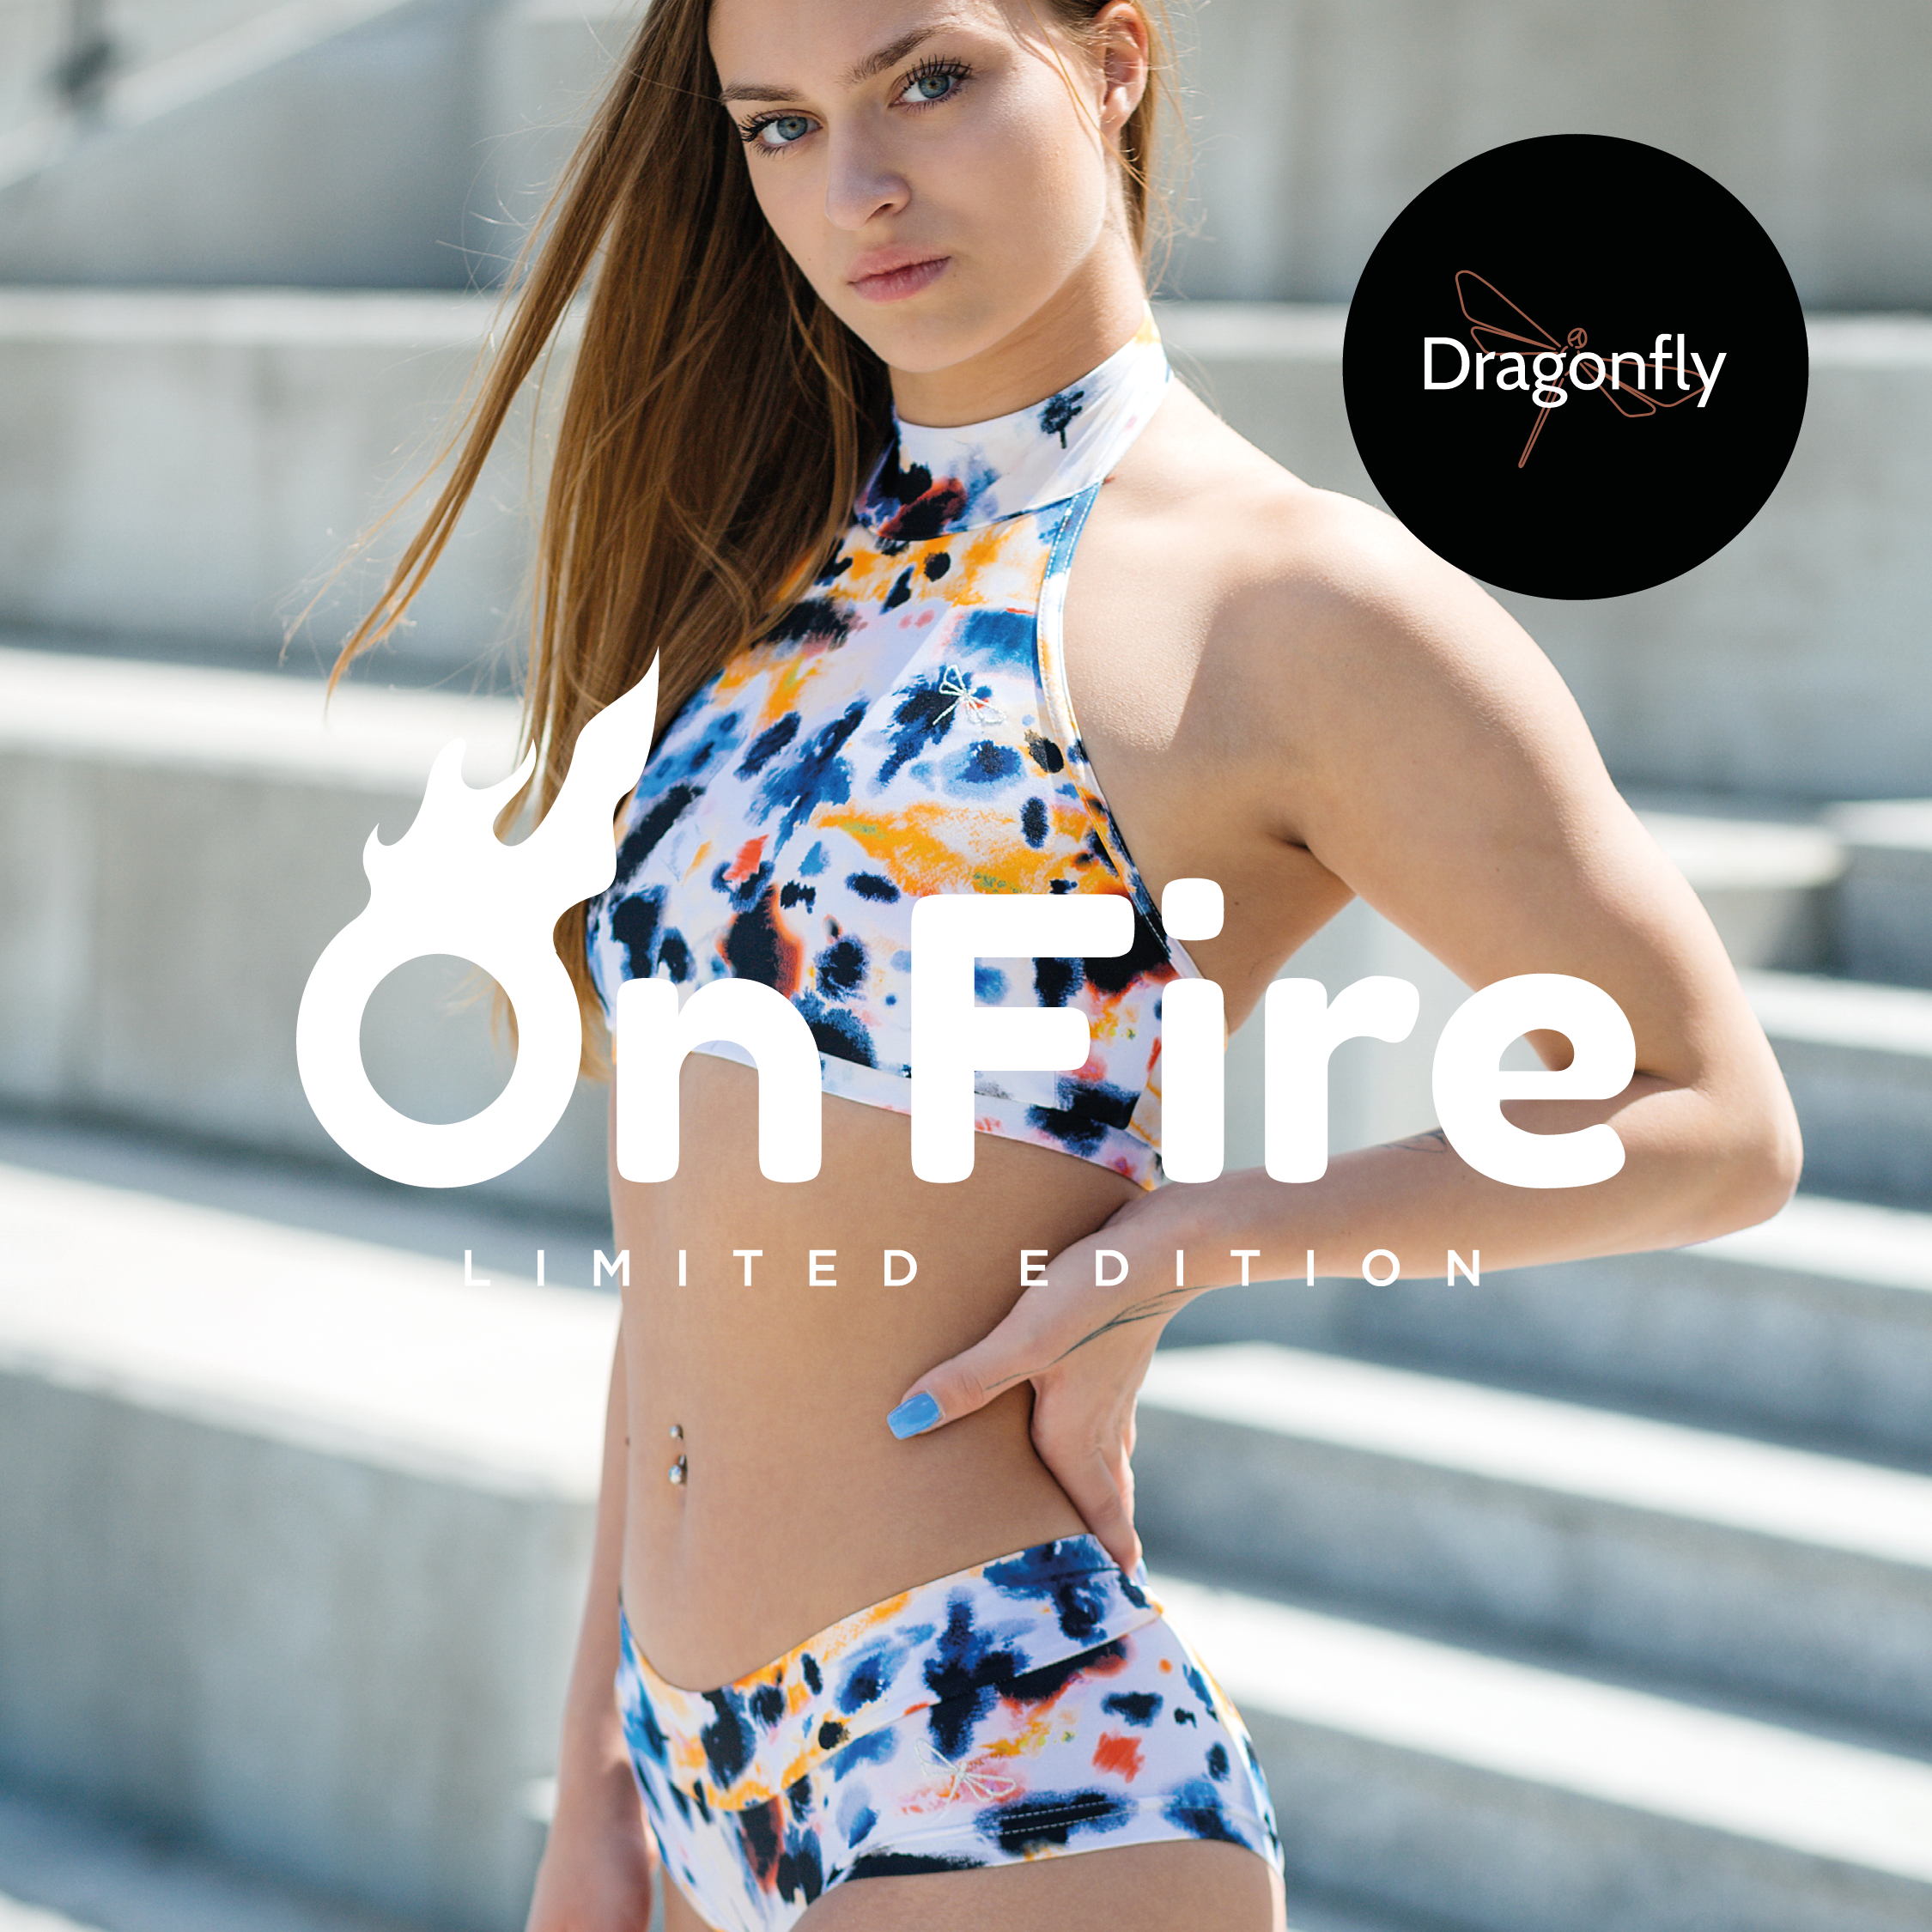 Meilleures ventes de vêtements de Pole Dance – Dragonfly